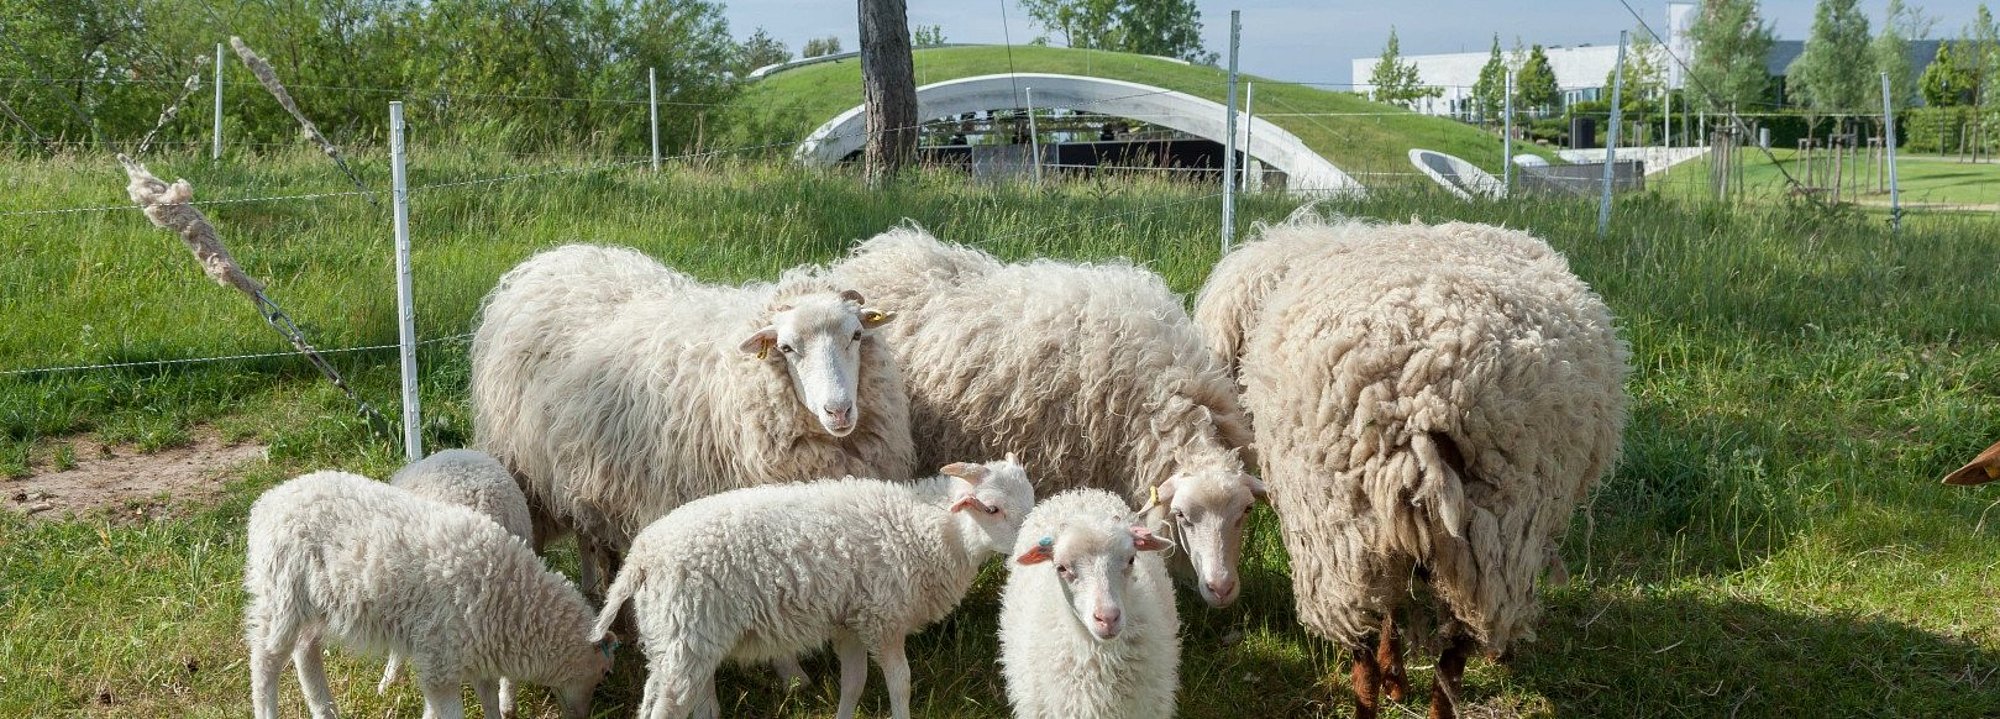 Schafe grasen auf den Beweidungsflächen im Kienbergpark